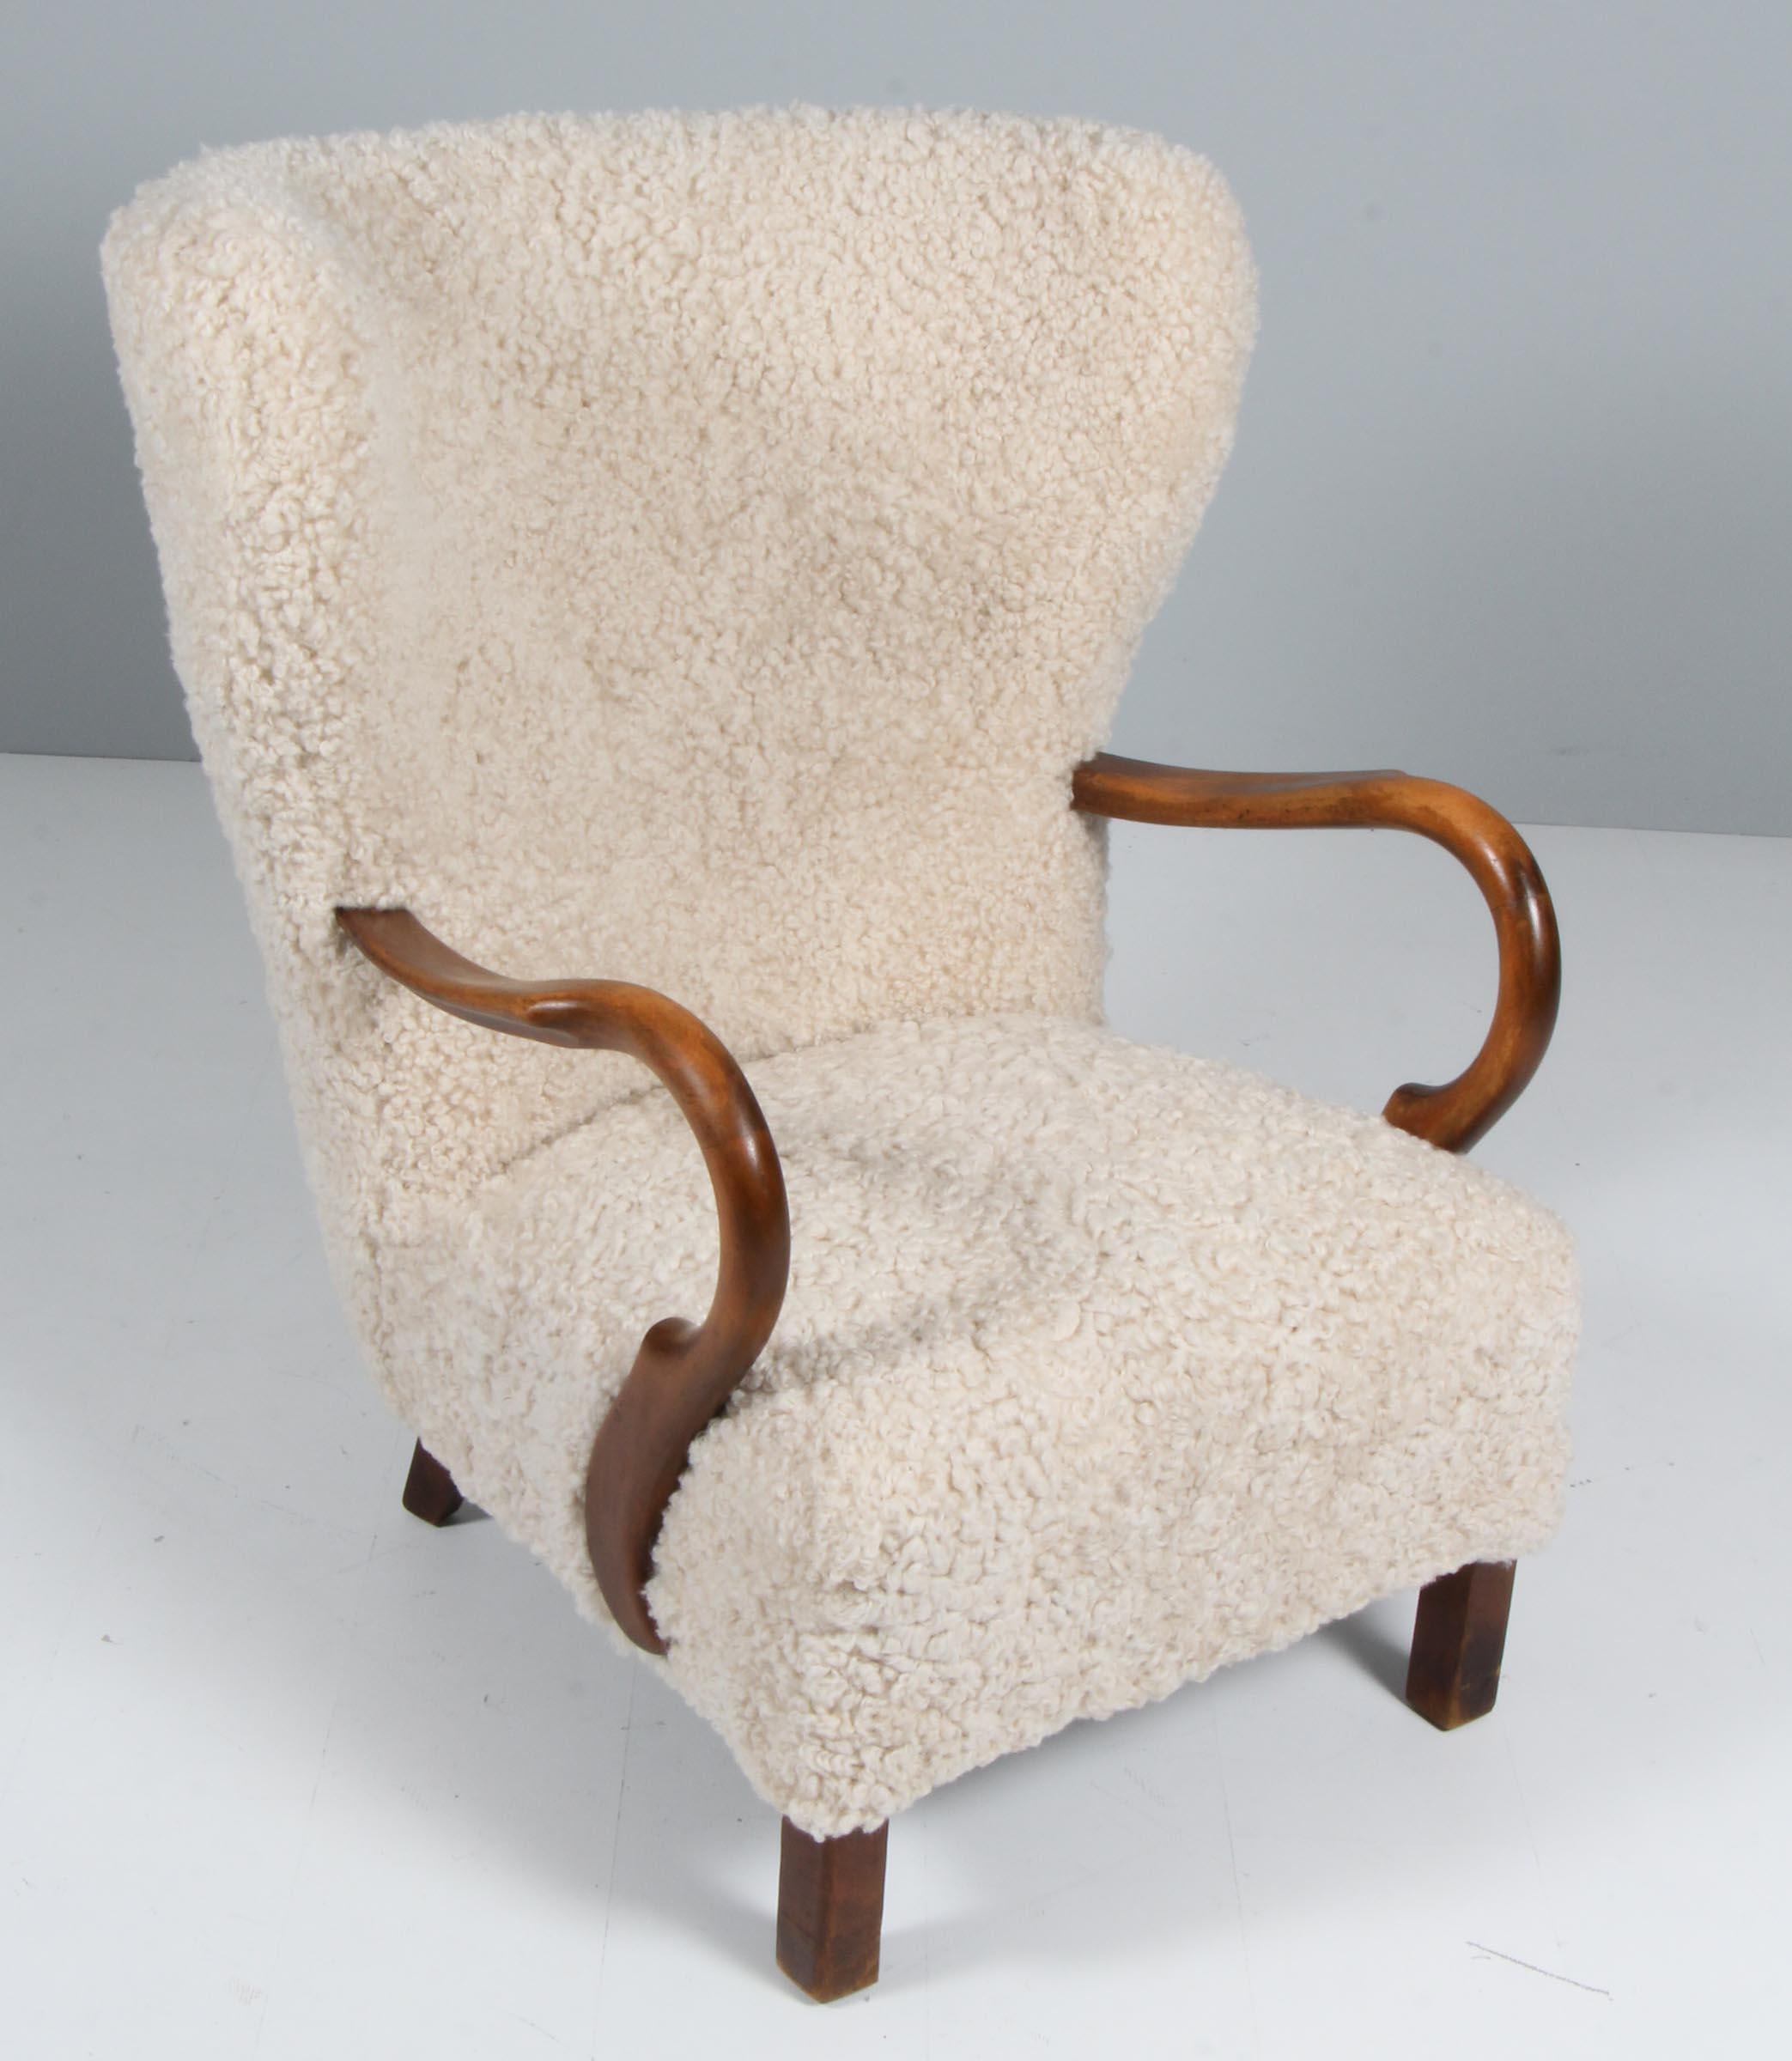 Chaise de salon en ébénisterie danoise nouvellement recouverte de peau d'agneau.

Pieds en hêtre teinté.

Fabriqué dans les années 1940.